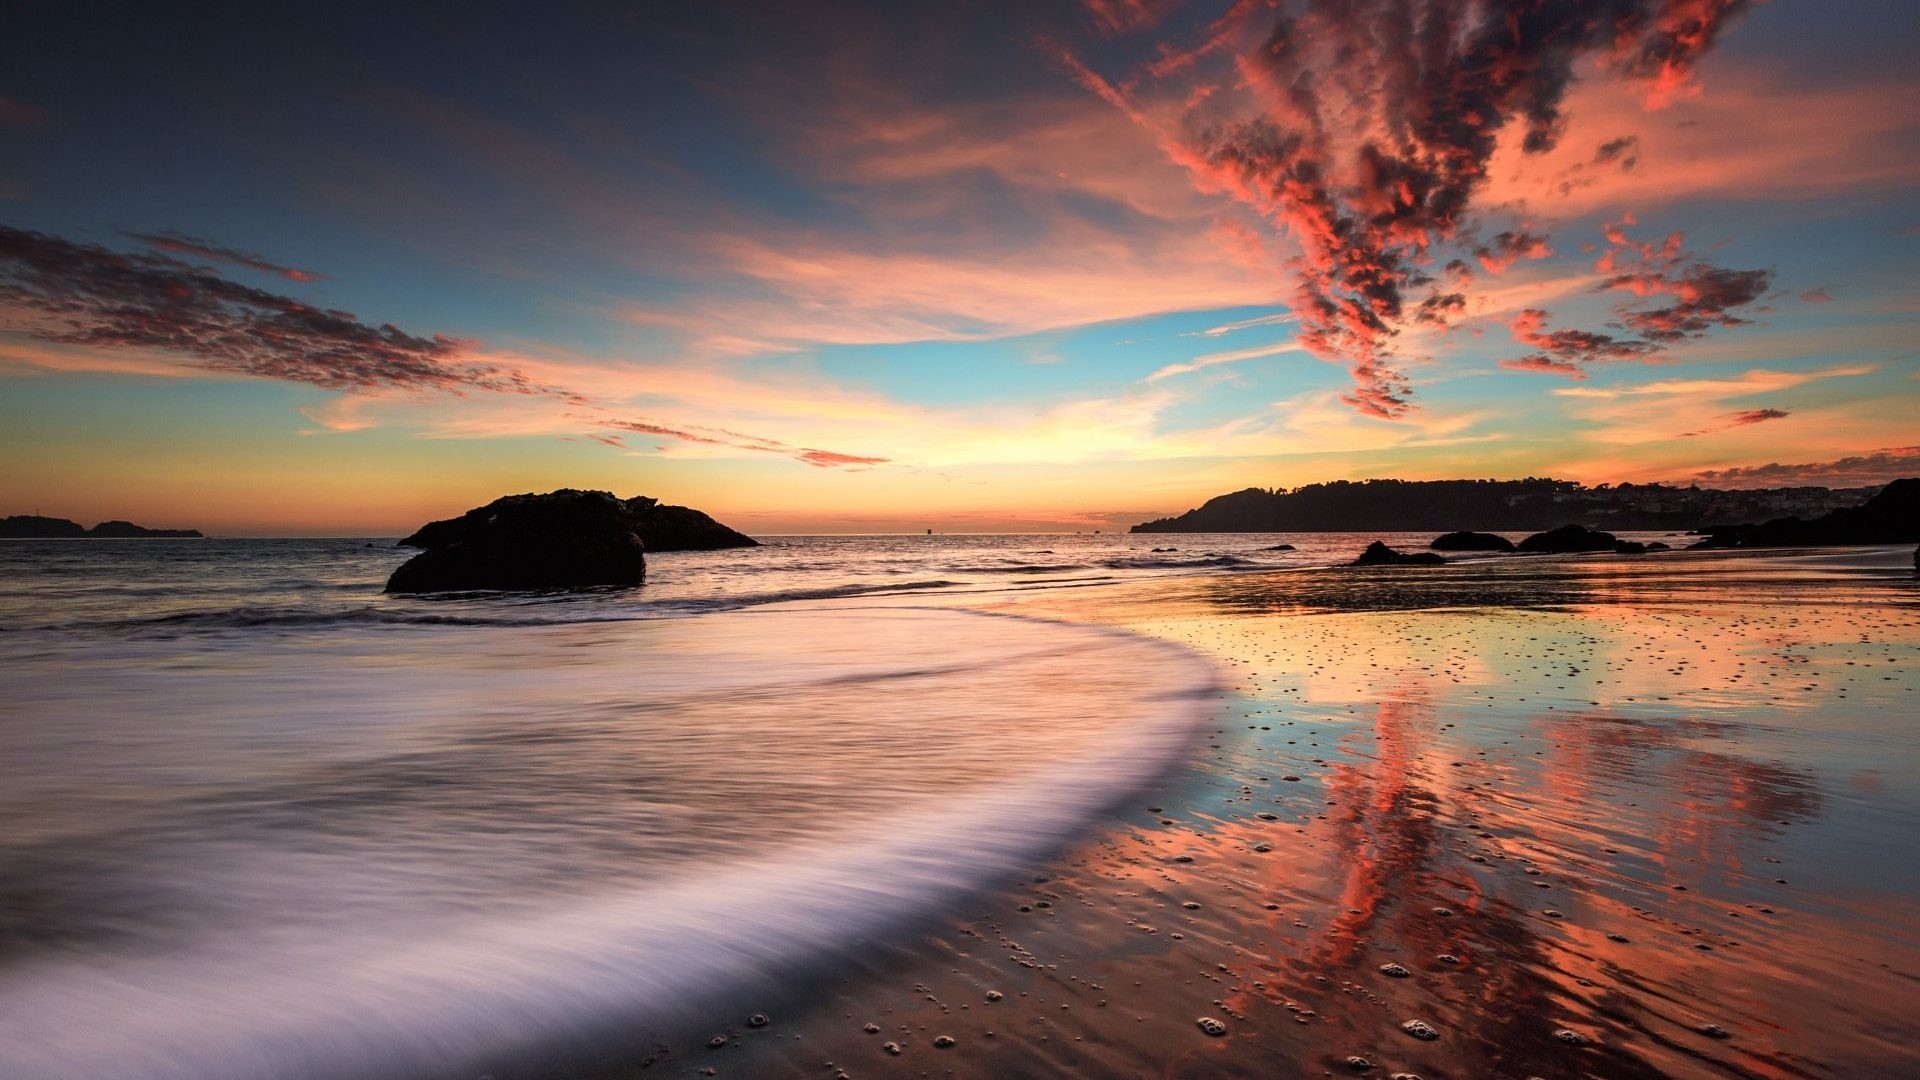 Evening Sunset Rocks Sea Beach Nature Wallpapers Desktop Background 1920x1200 1920x1080